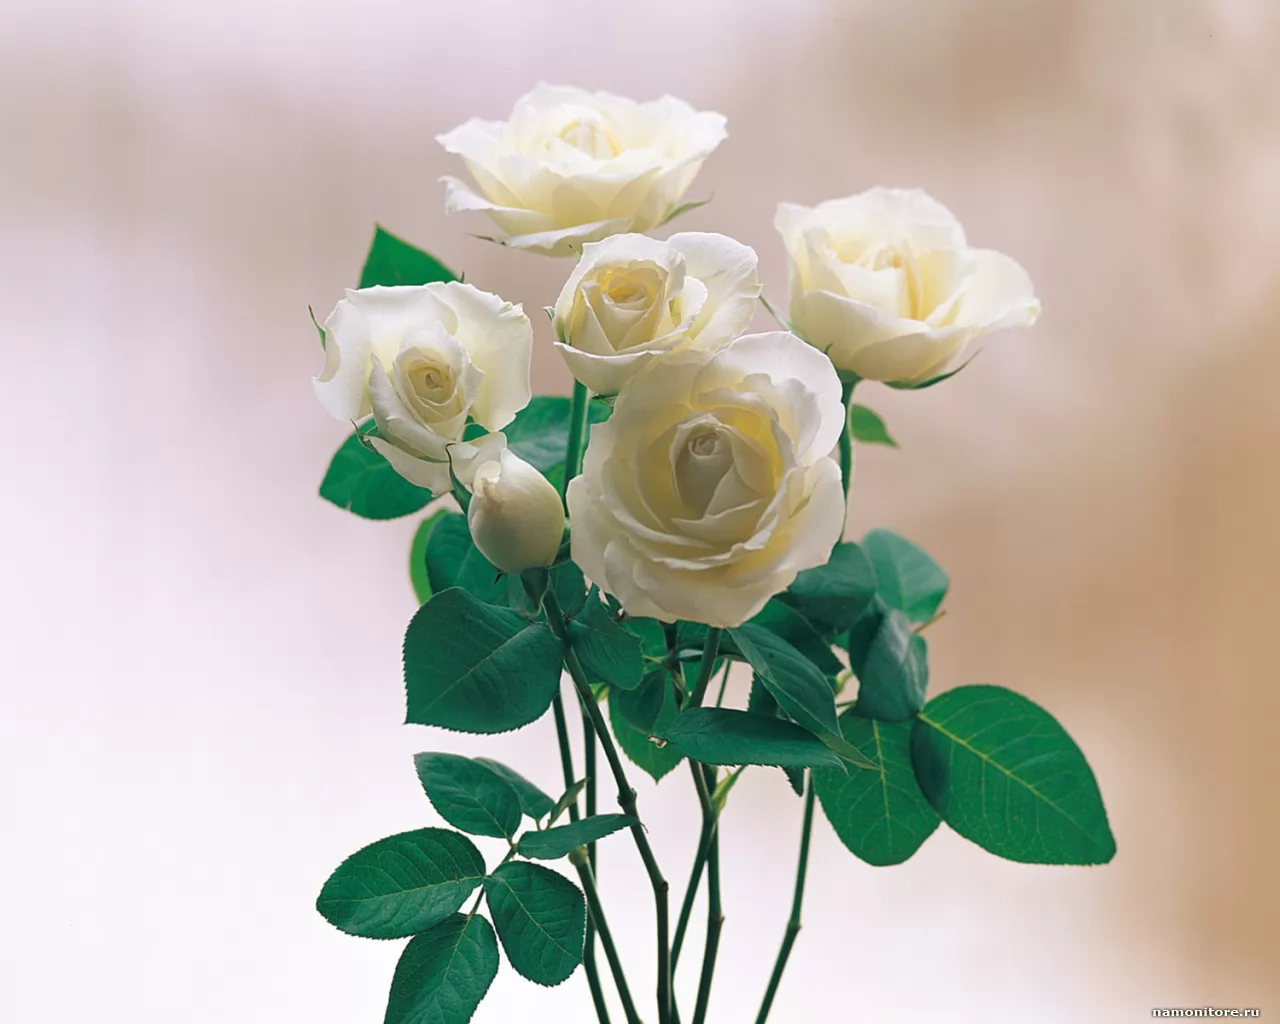 Roses, best, flowers, roses, white x